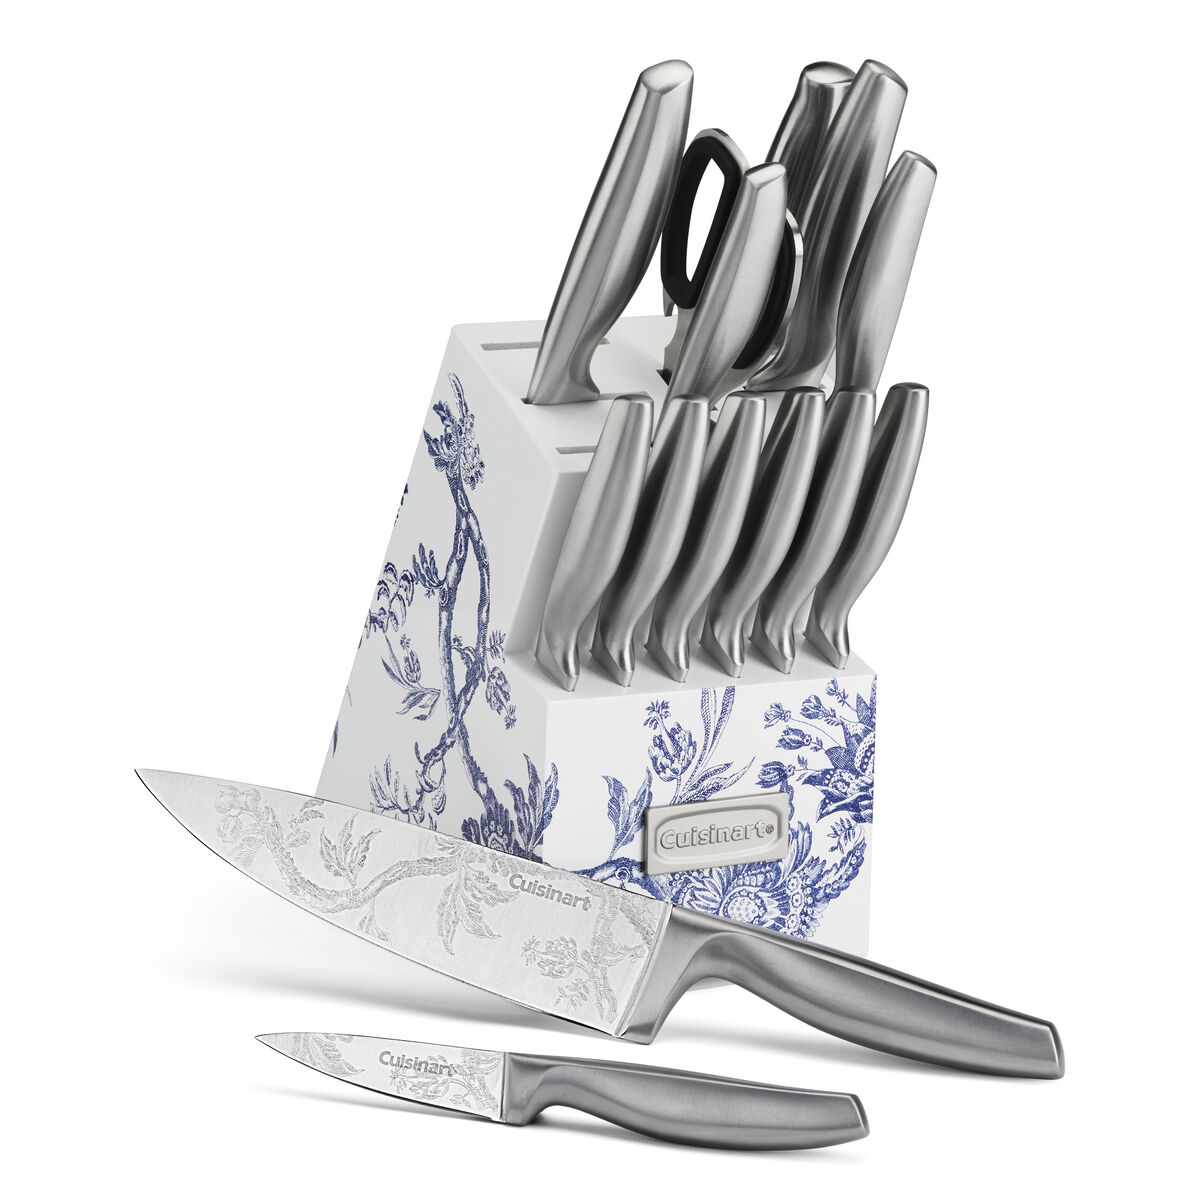 Cuisinart® Caskata™ 15 Piece German Stainless Steel Knife Block Set